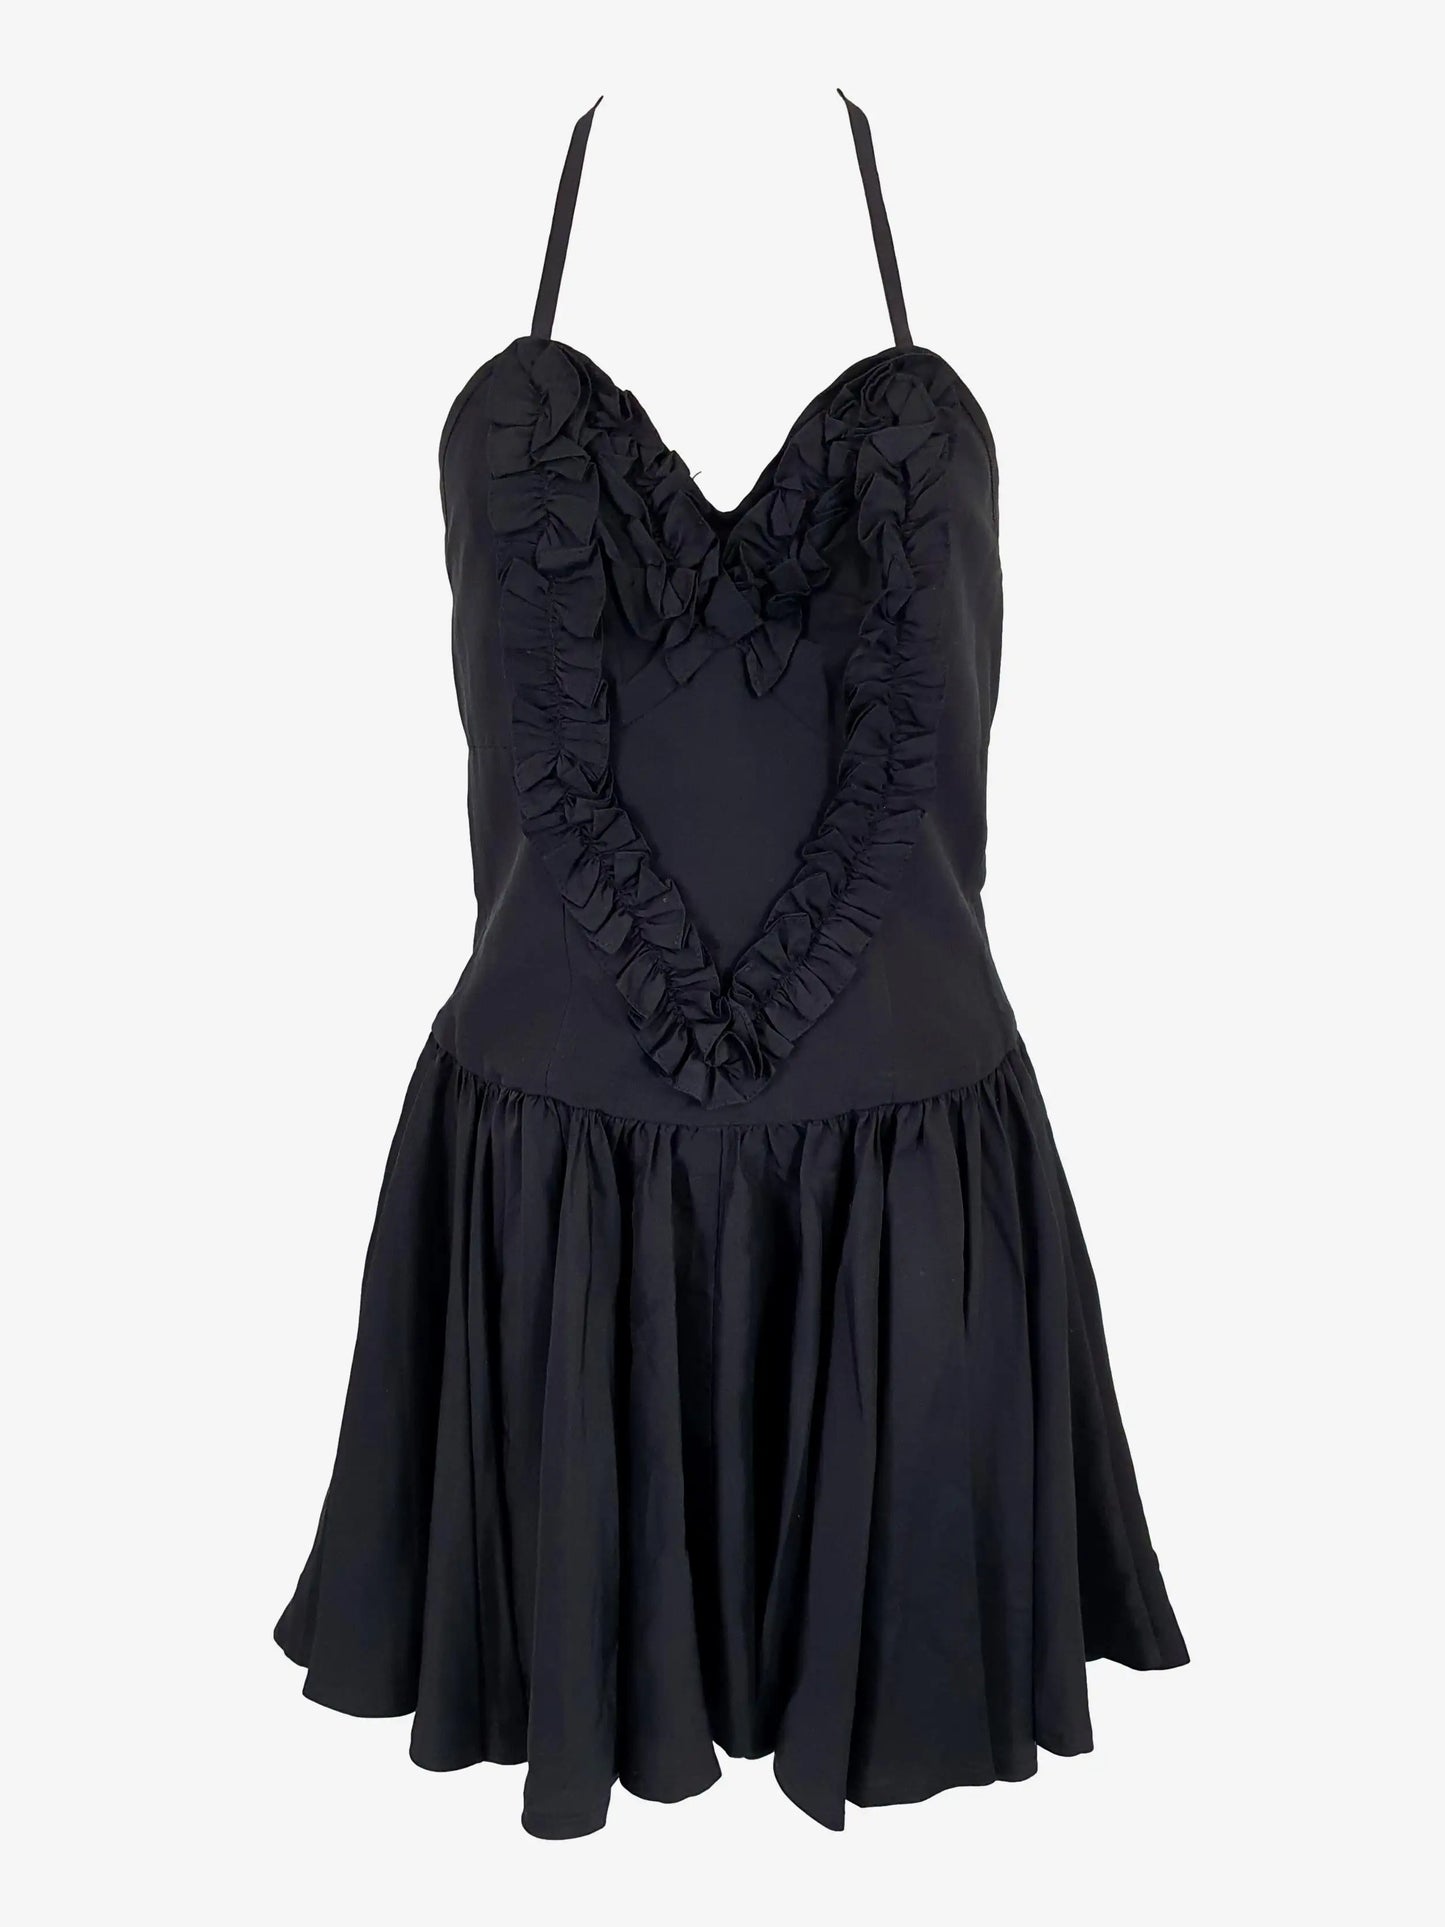 Karen Walker Heart Frill Mini Dress Size 8 by SwapUp-Online Second Hand Store-Online Thrift Store